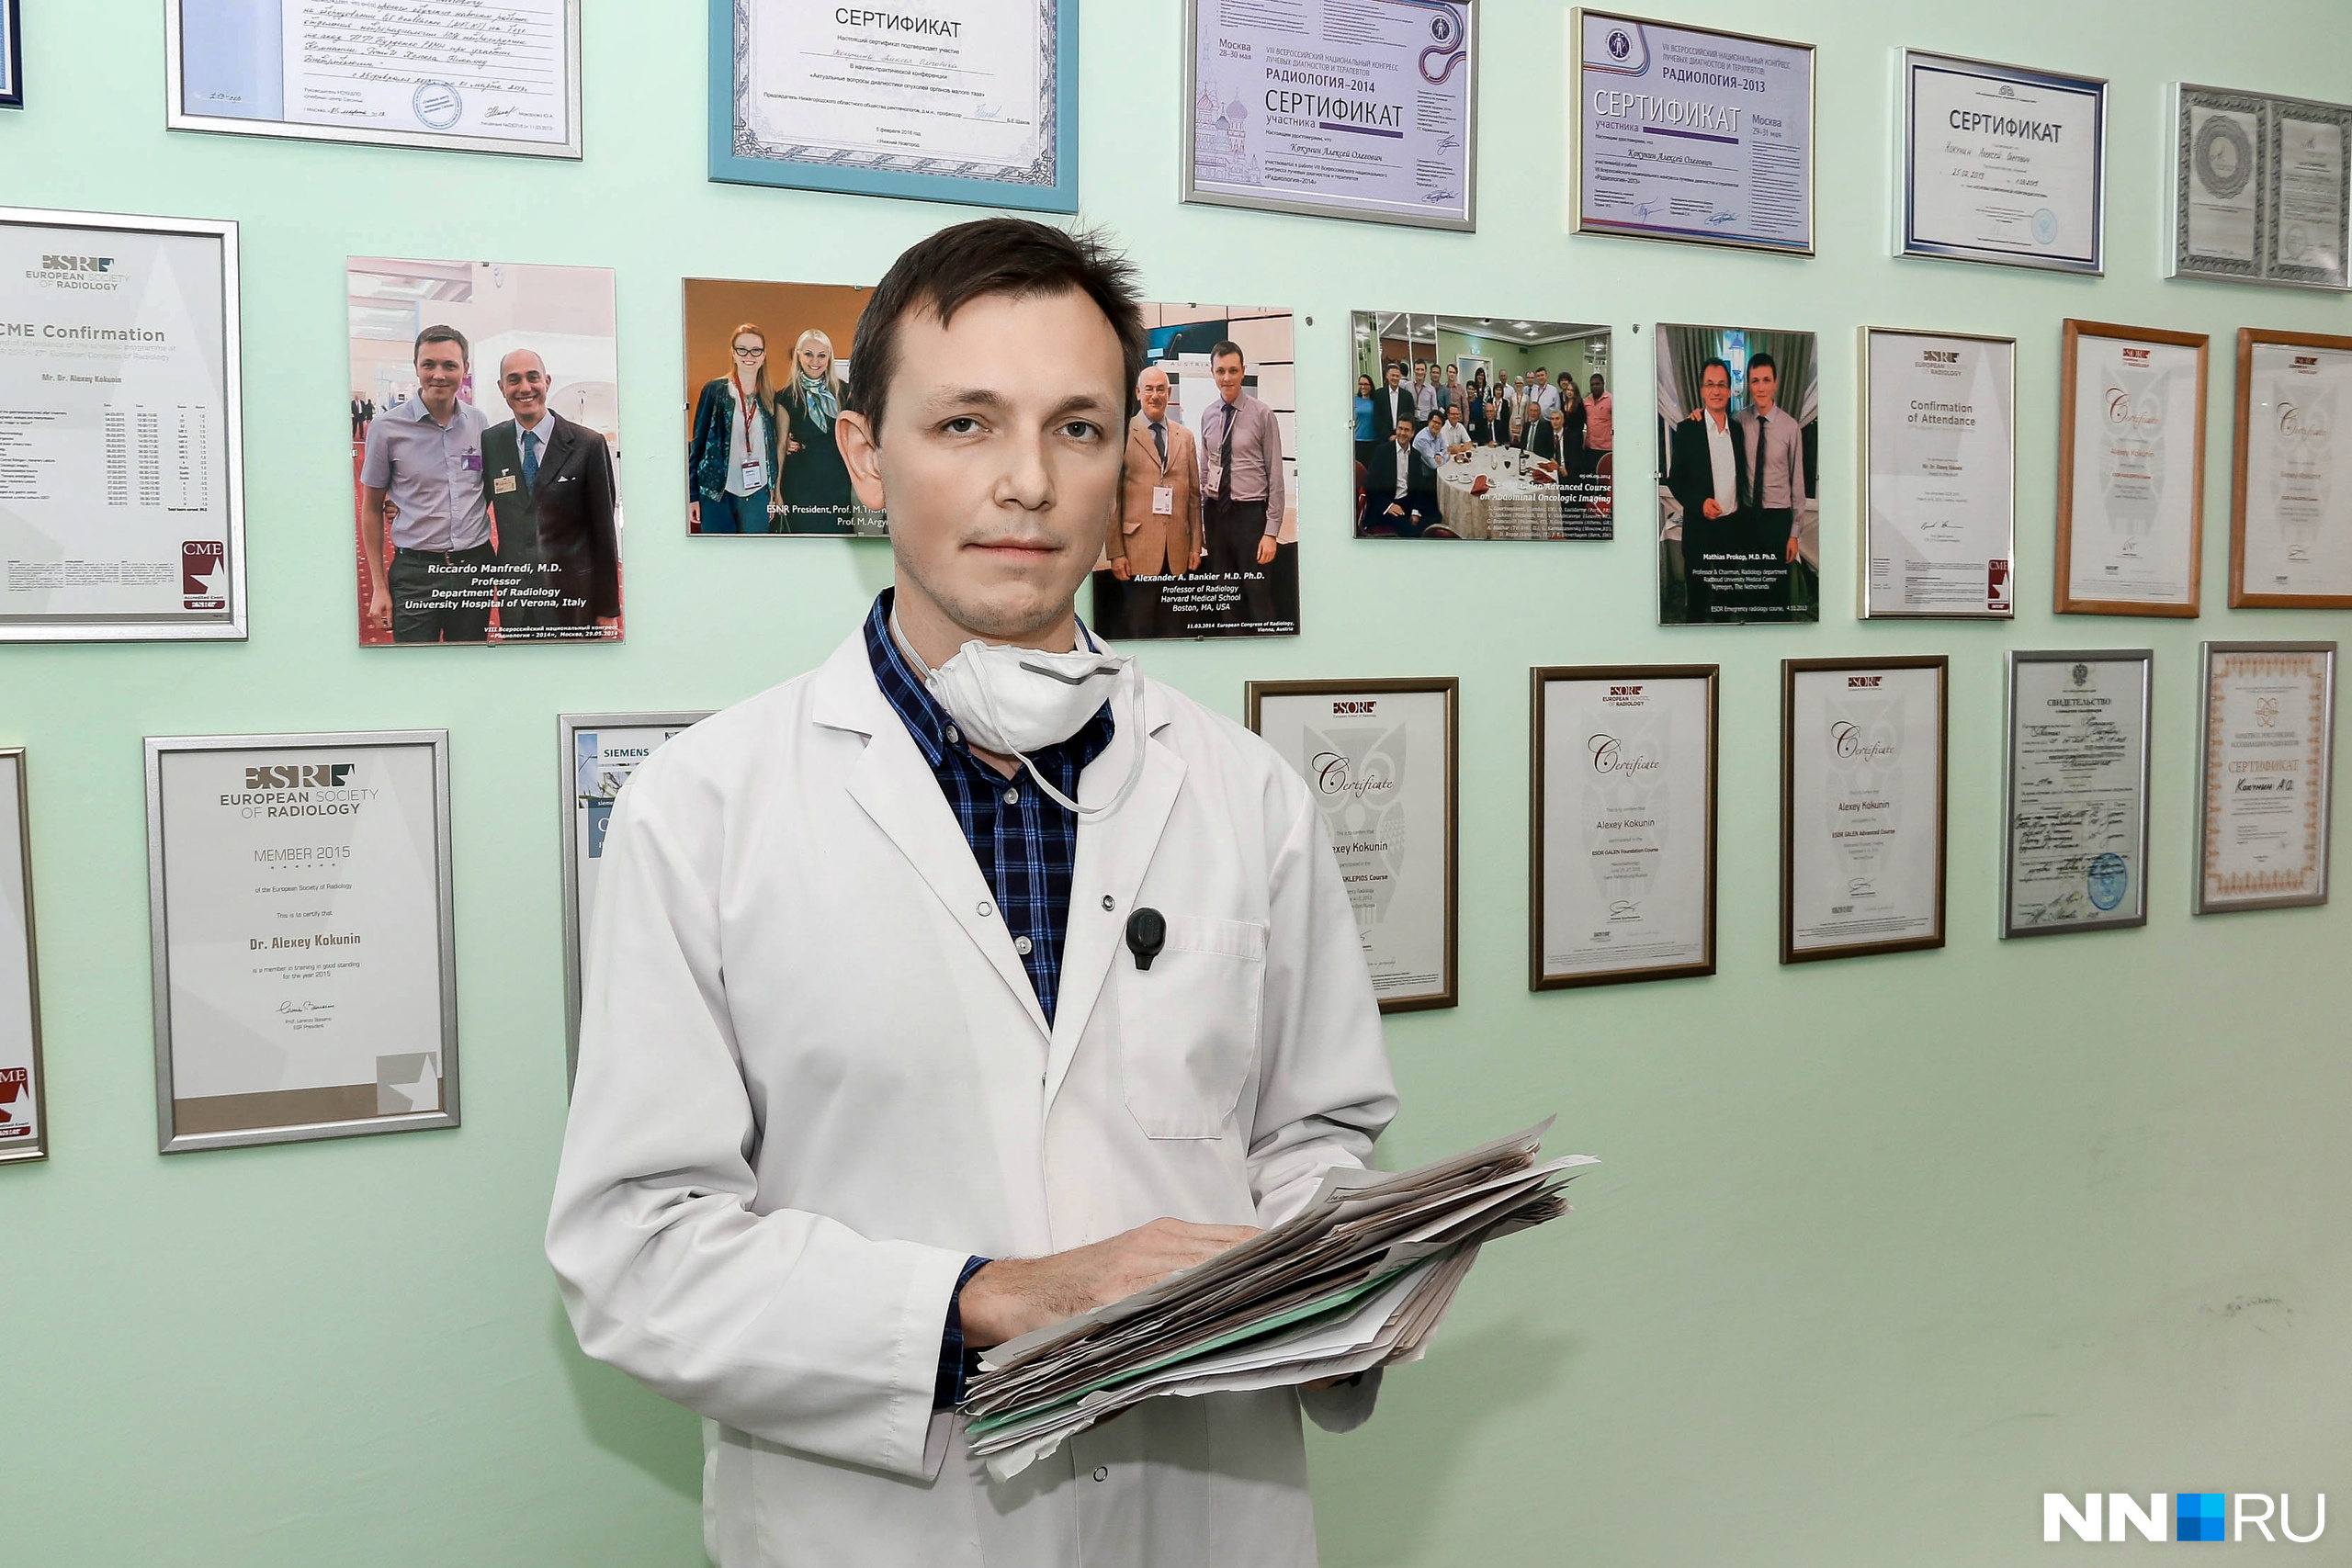 Дипломы и сертификаты Алексея Кокунина занимают всю стену